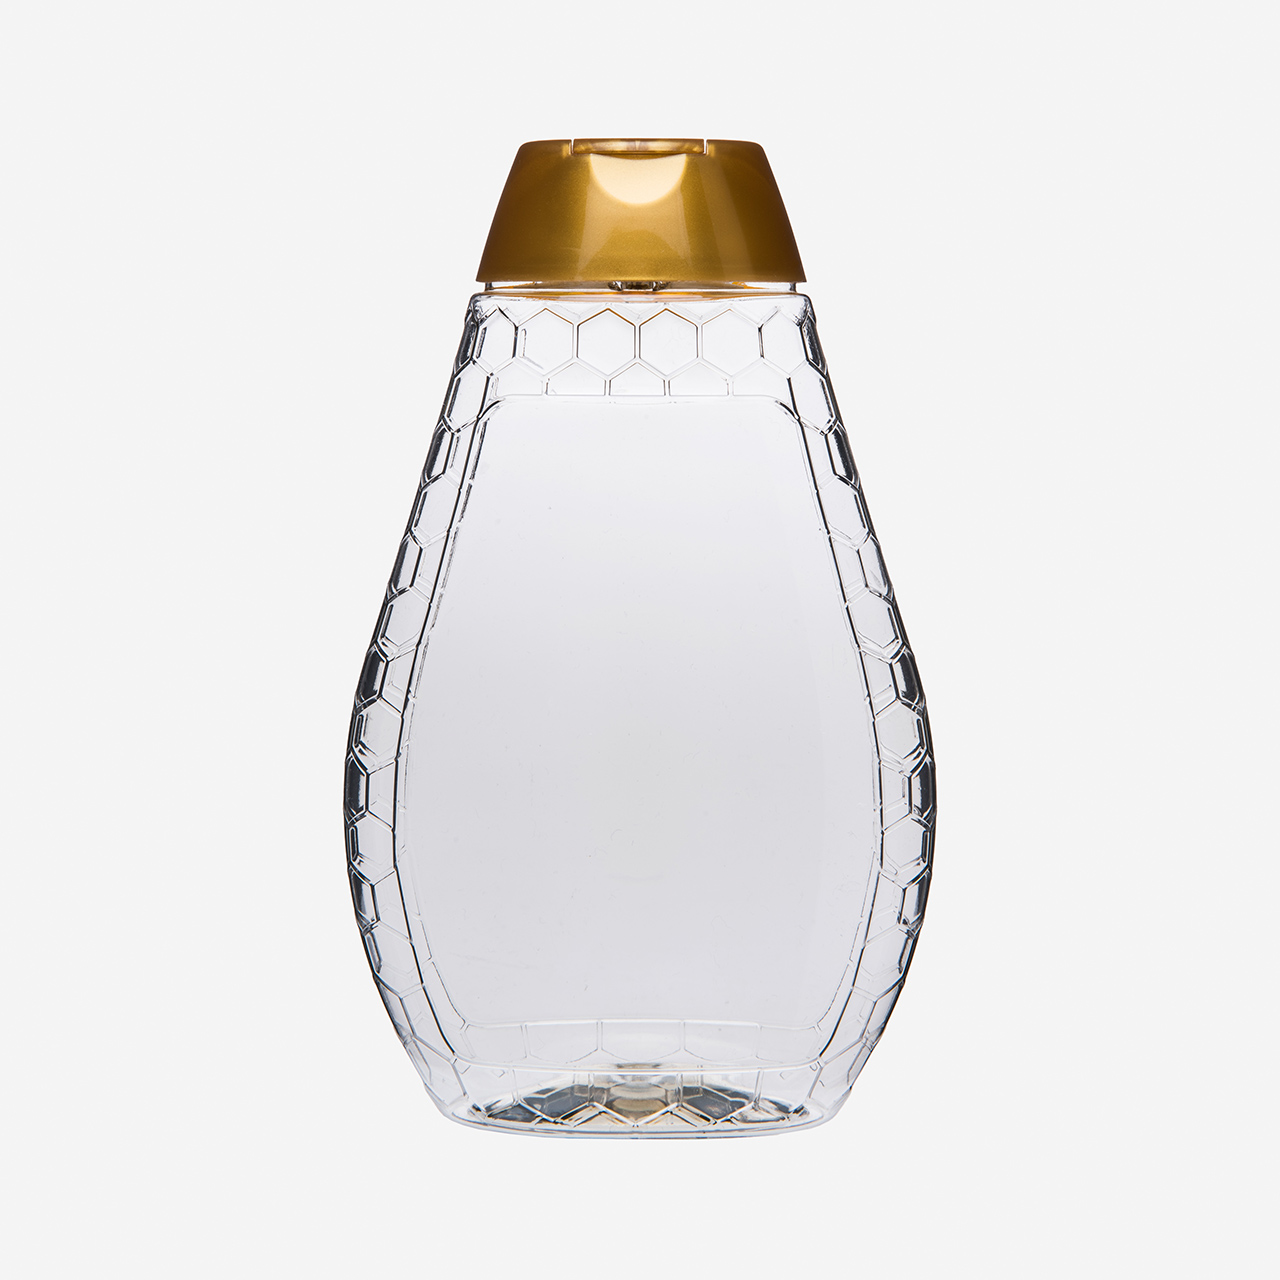 500g Quetschflasche Honigwabe  50% rPET für Honig und Sirup (Palette  à 1.728 Stk.)